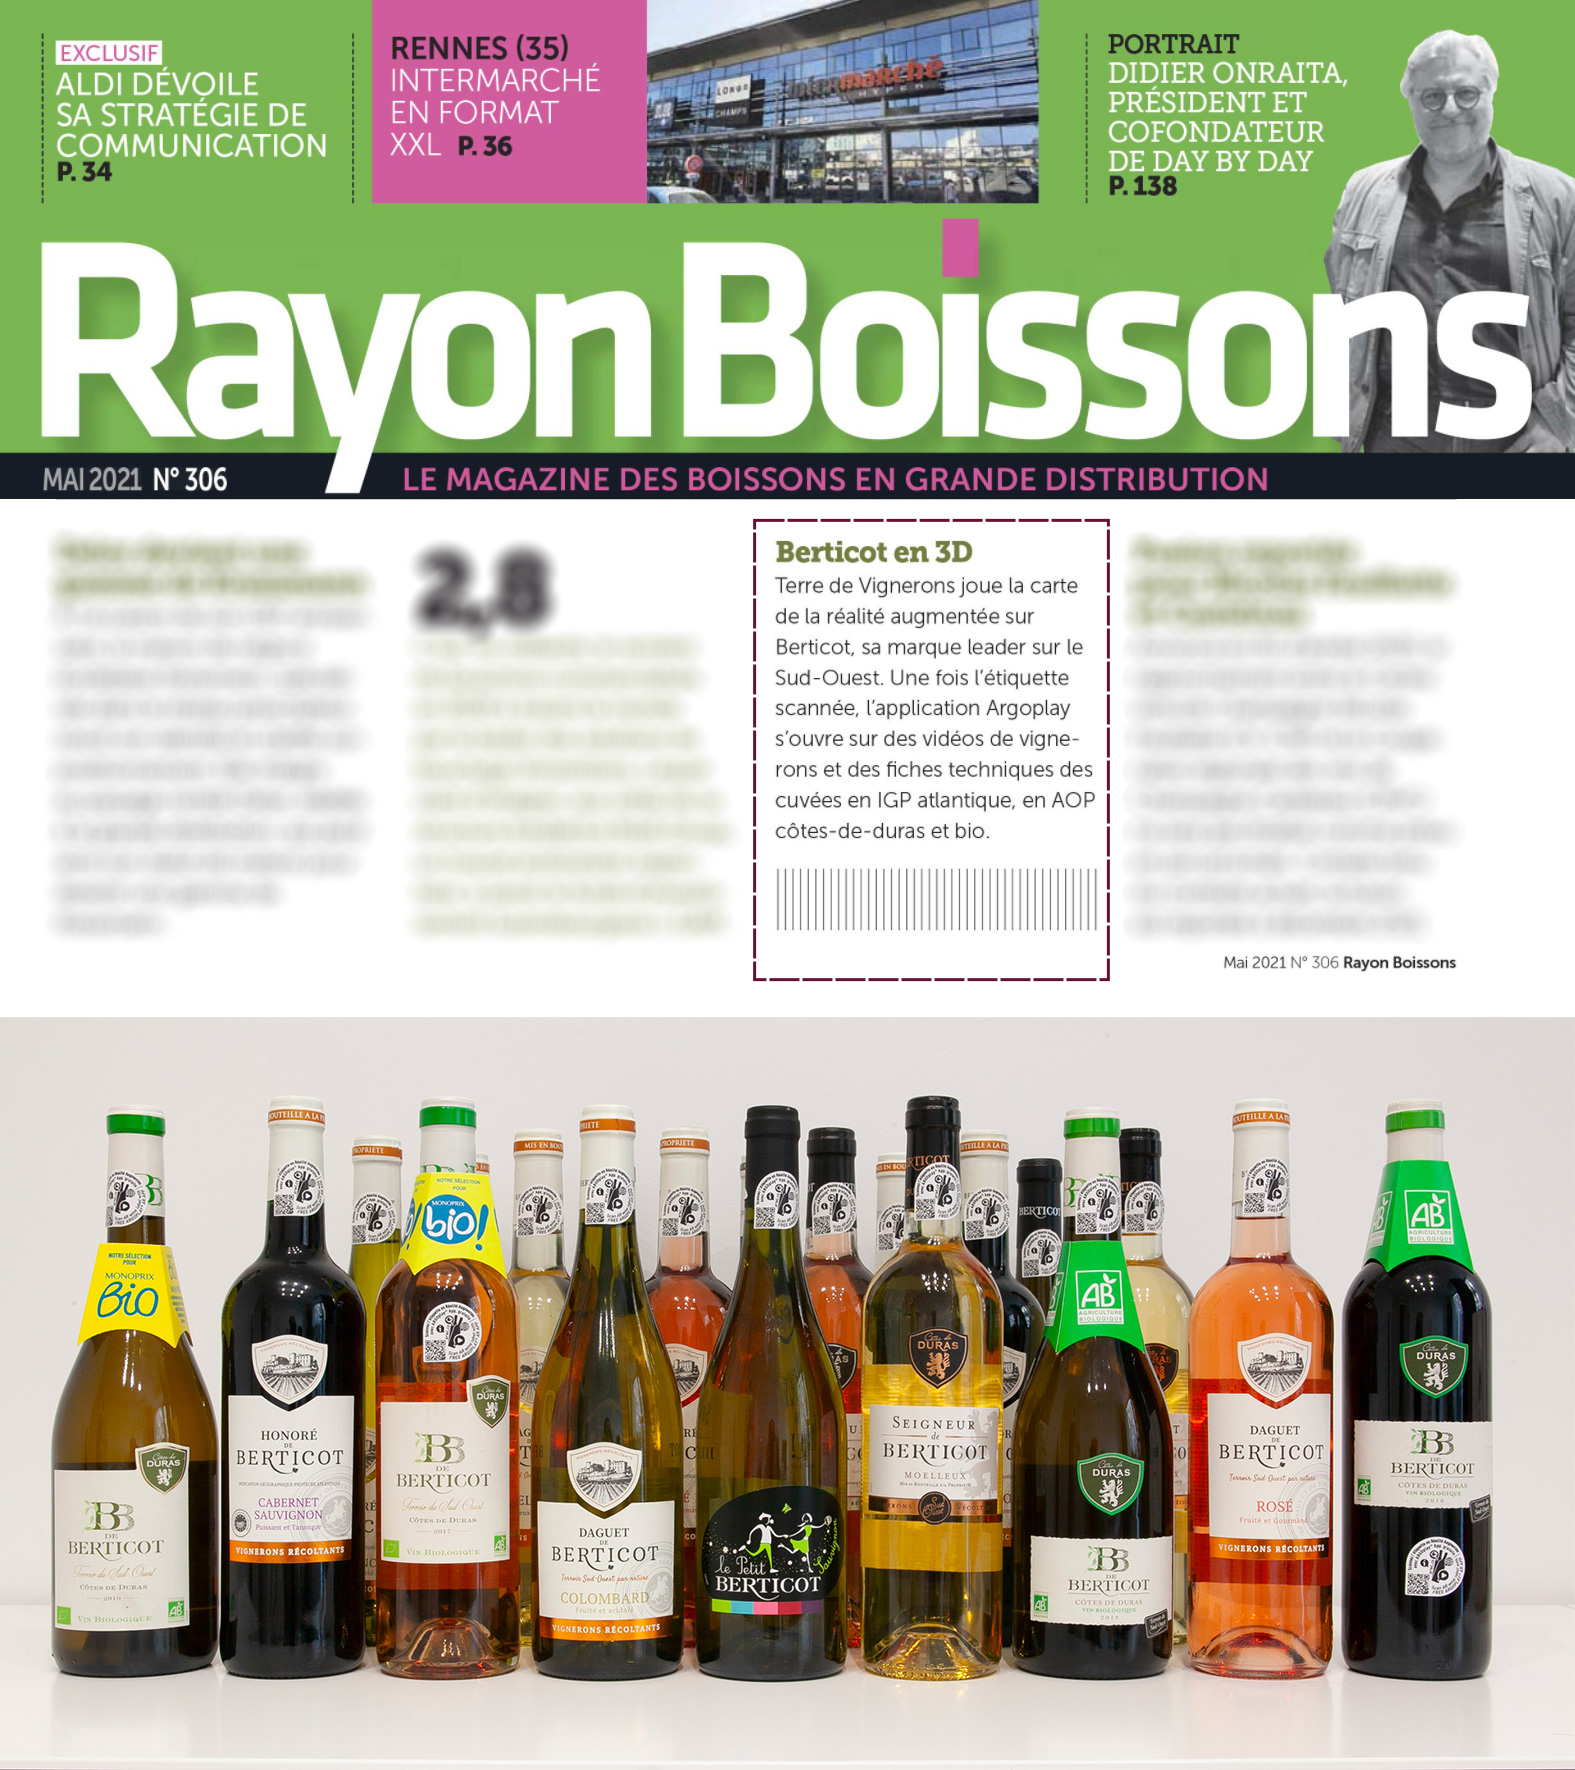 Rayon Boissons N°306 mai 2021 et étiquettes en 3D des vins Berticot